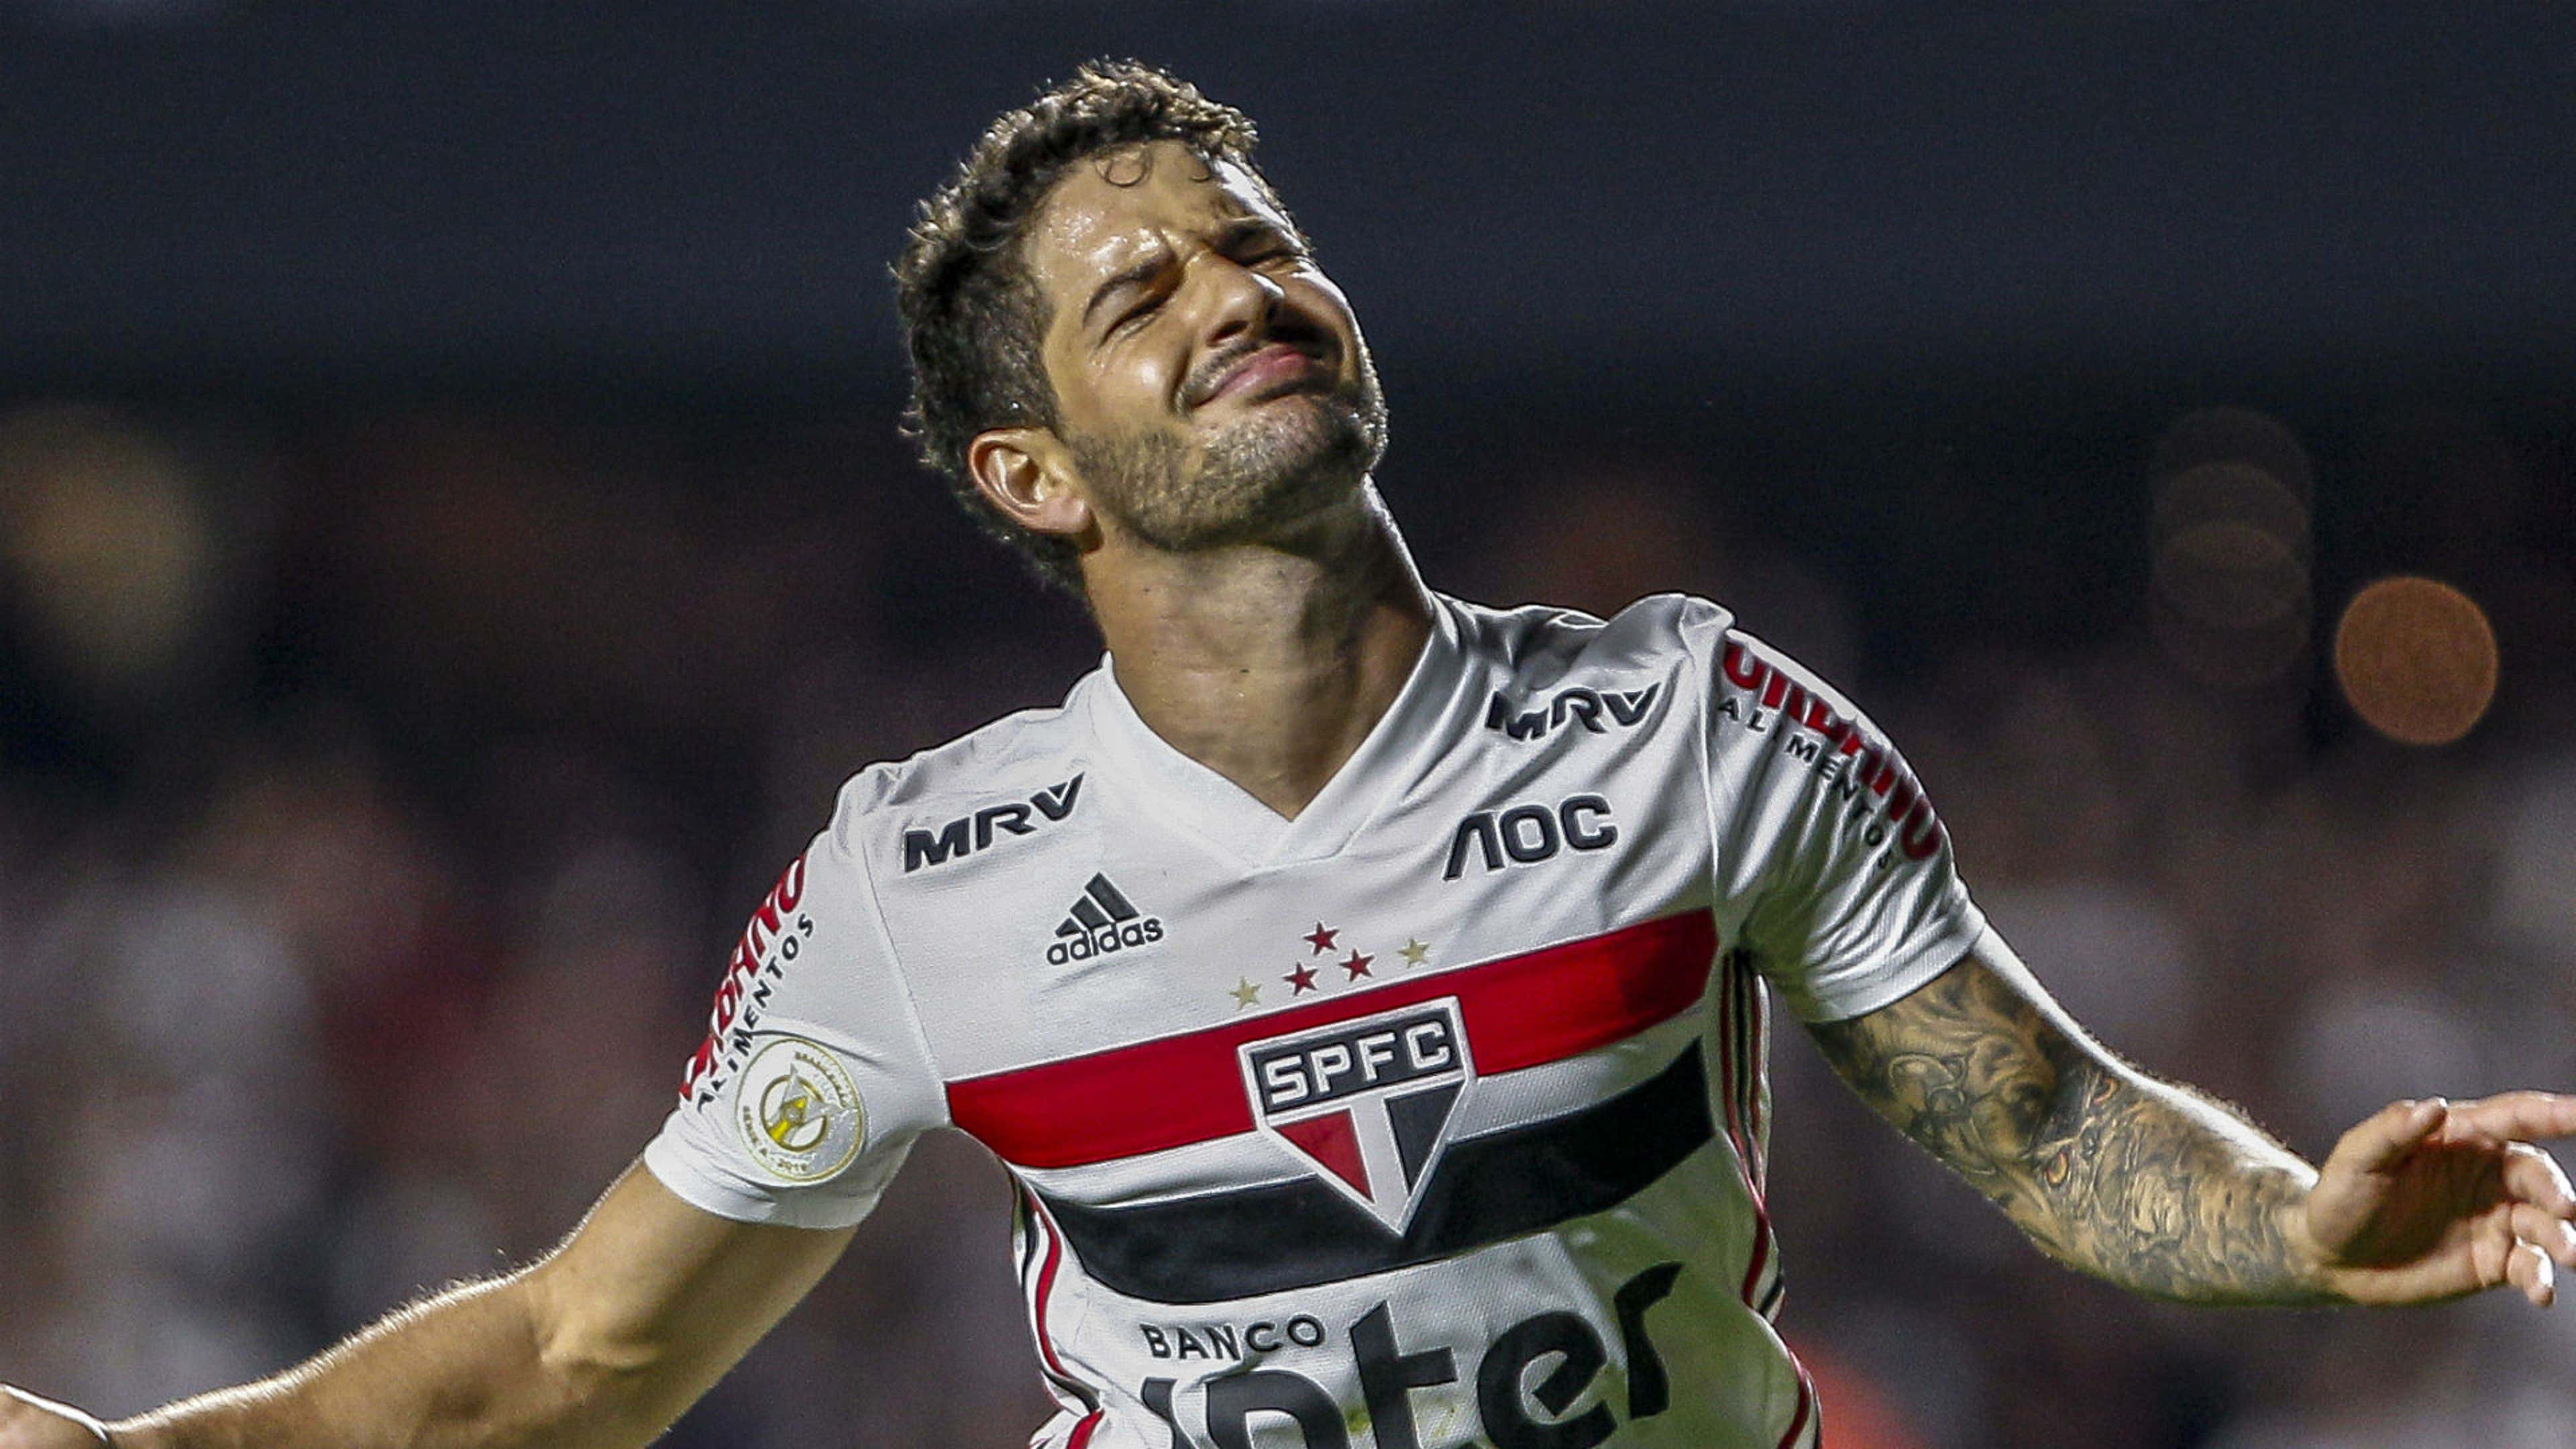 Incrível: Quem foi o melhor o jogador do São Paulo em 2023? Vote